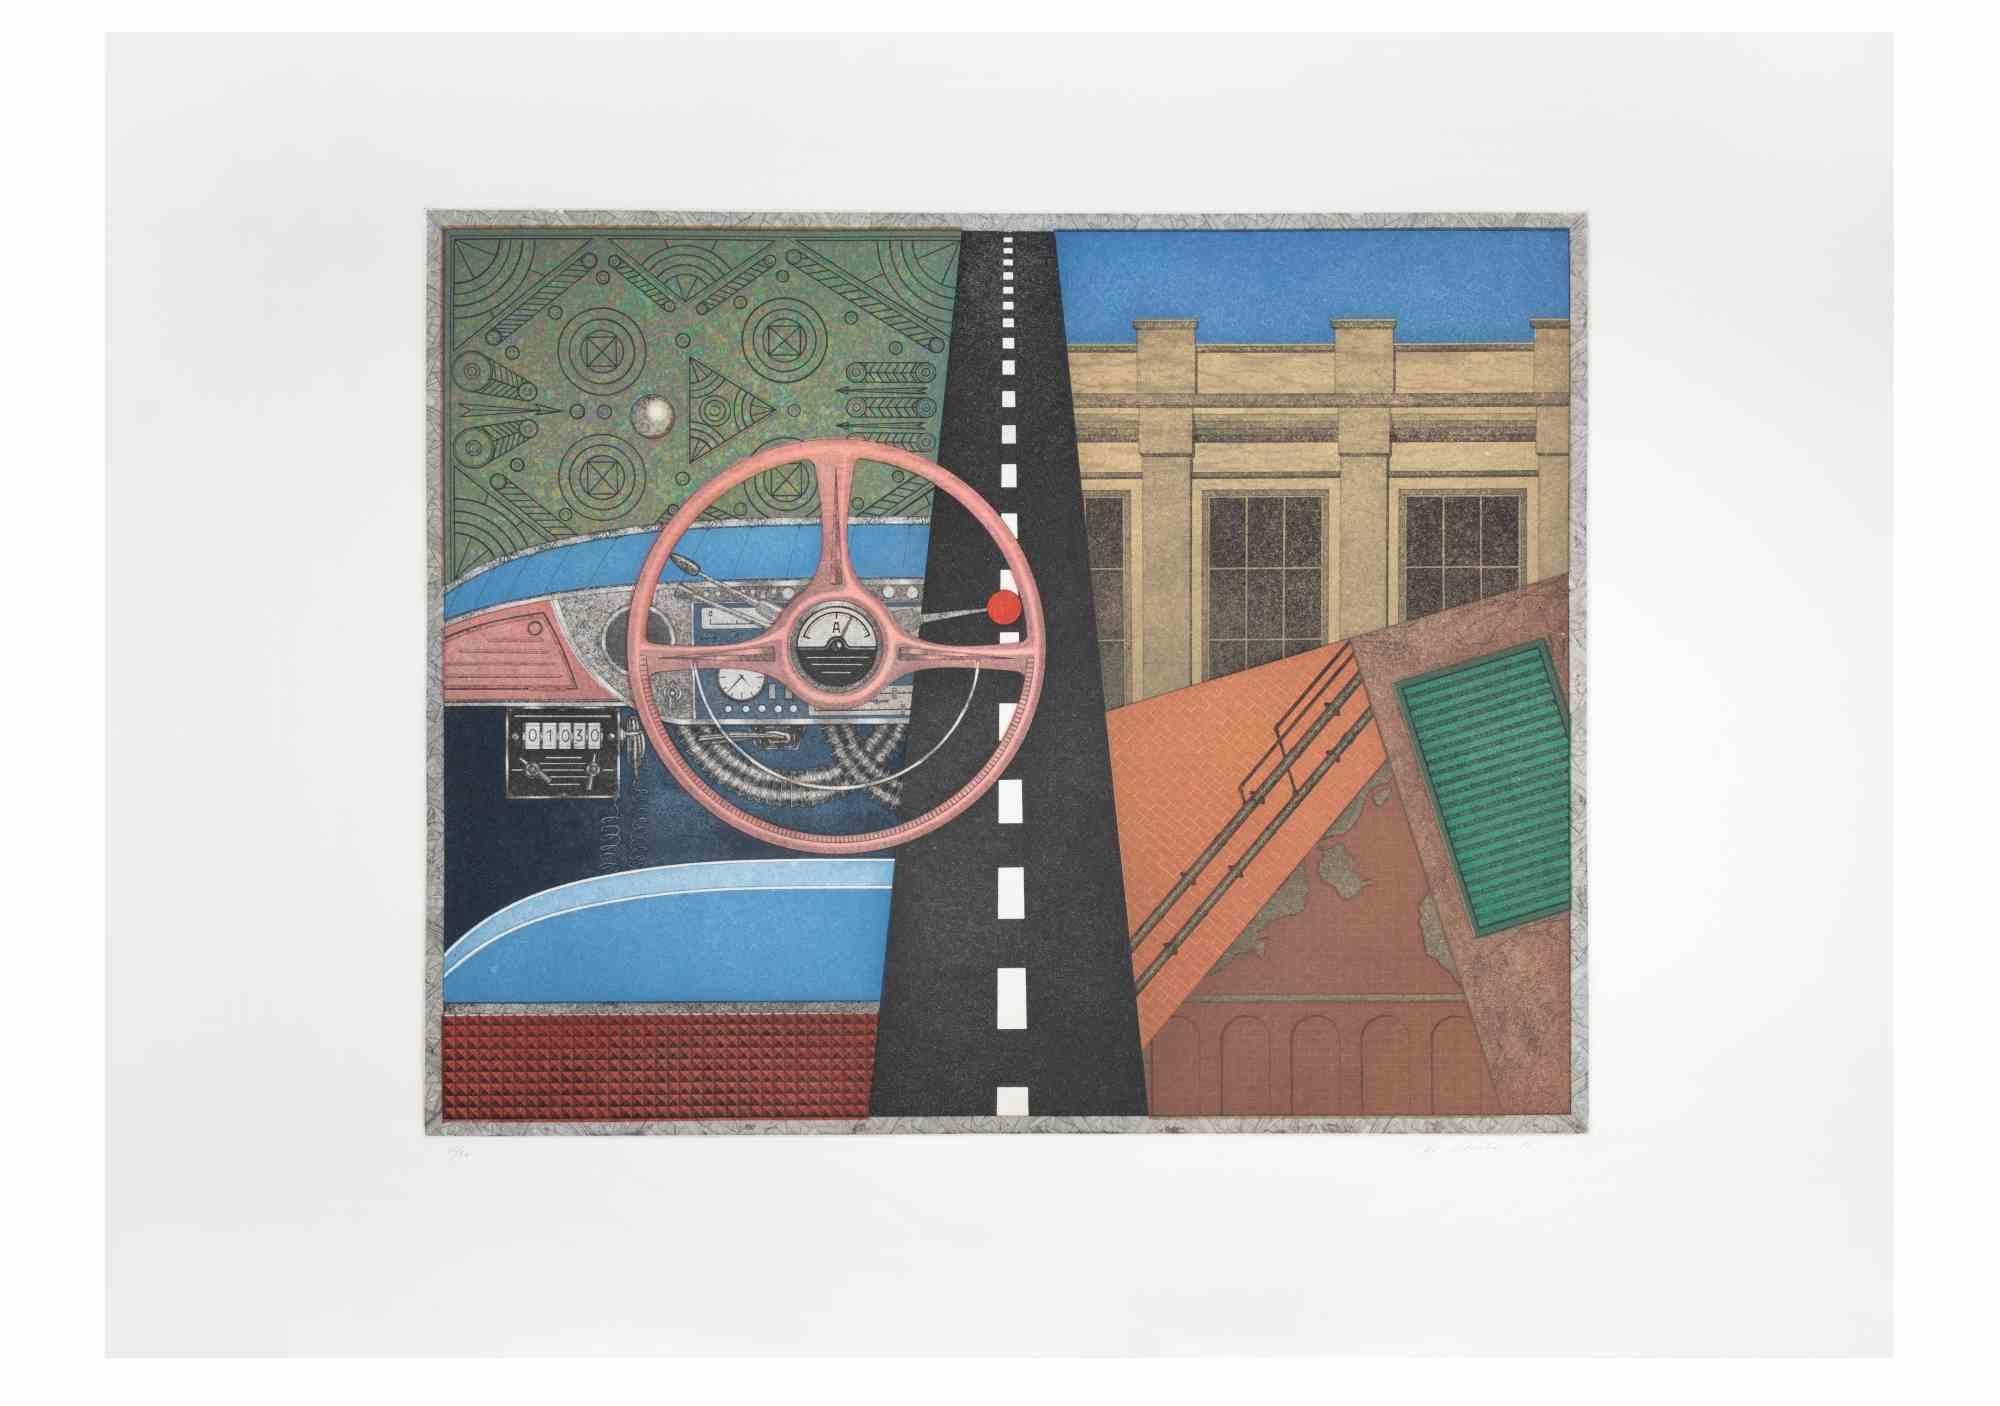 Taxi: Lenkrad ist ein zeitgenössisches Kunstwerk des Künstlers Fifo Stricker aus dem Jahr 1982.   

Gemischte farbige Aquatinta und Radierung.    

Vom Künstler am rechten unteren Rand handsigniert und datiert.   

Am linken unteren Rand nummeriert.